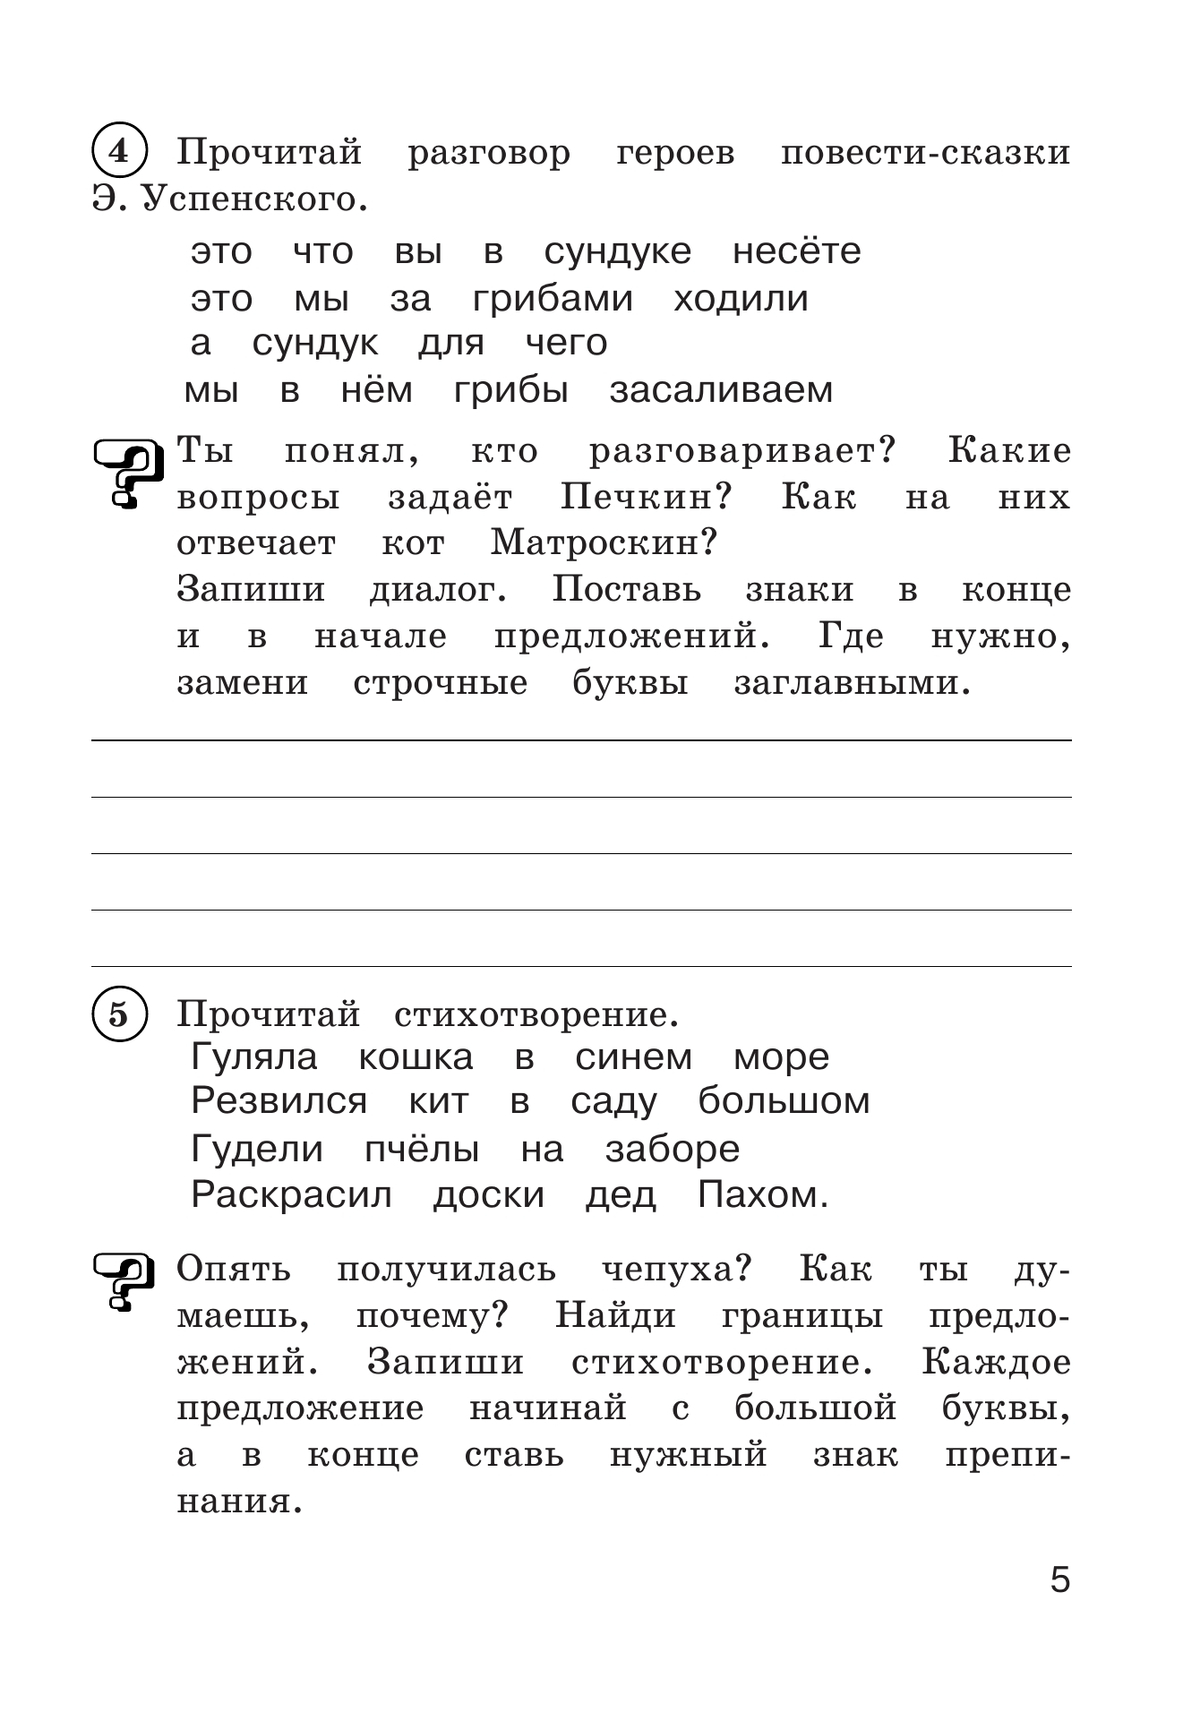 Рабочая тетрадь по русскому языку. 3 класс. В 2 частях. Часть 2 6